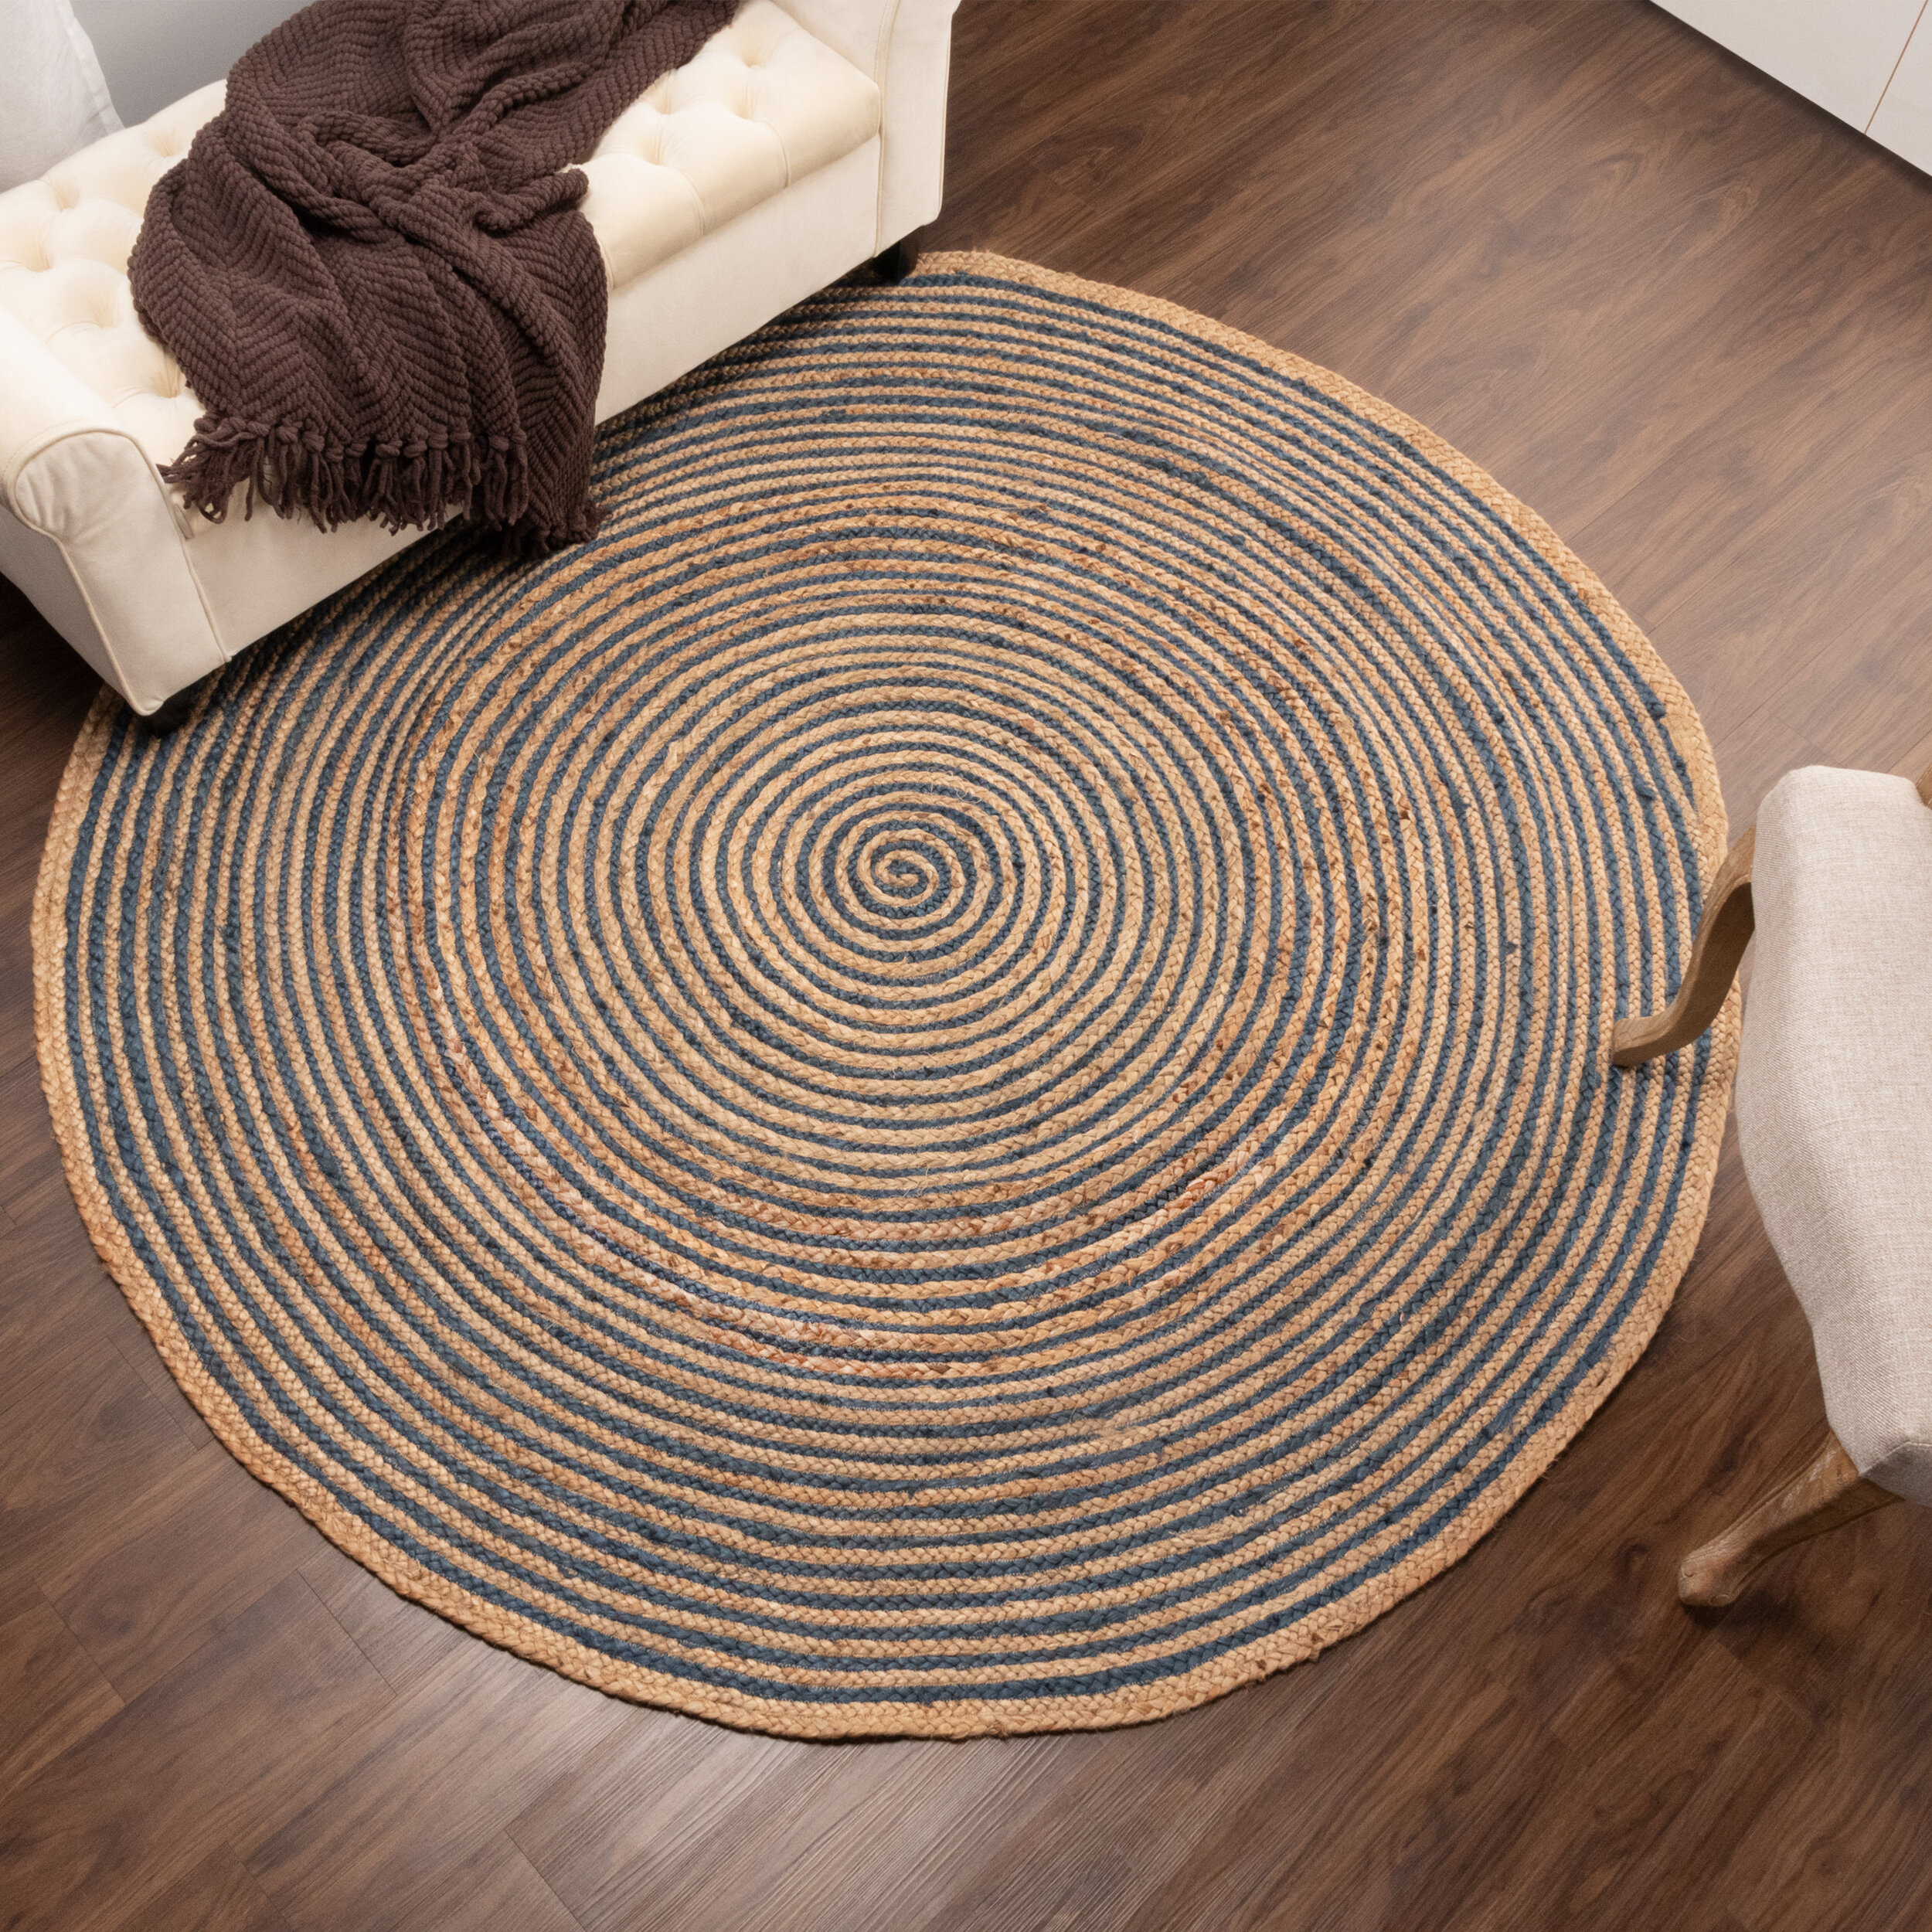 Jute 100% Natural Round Rug Indian Braided style blue Handmade Floor Jute Rugs